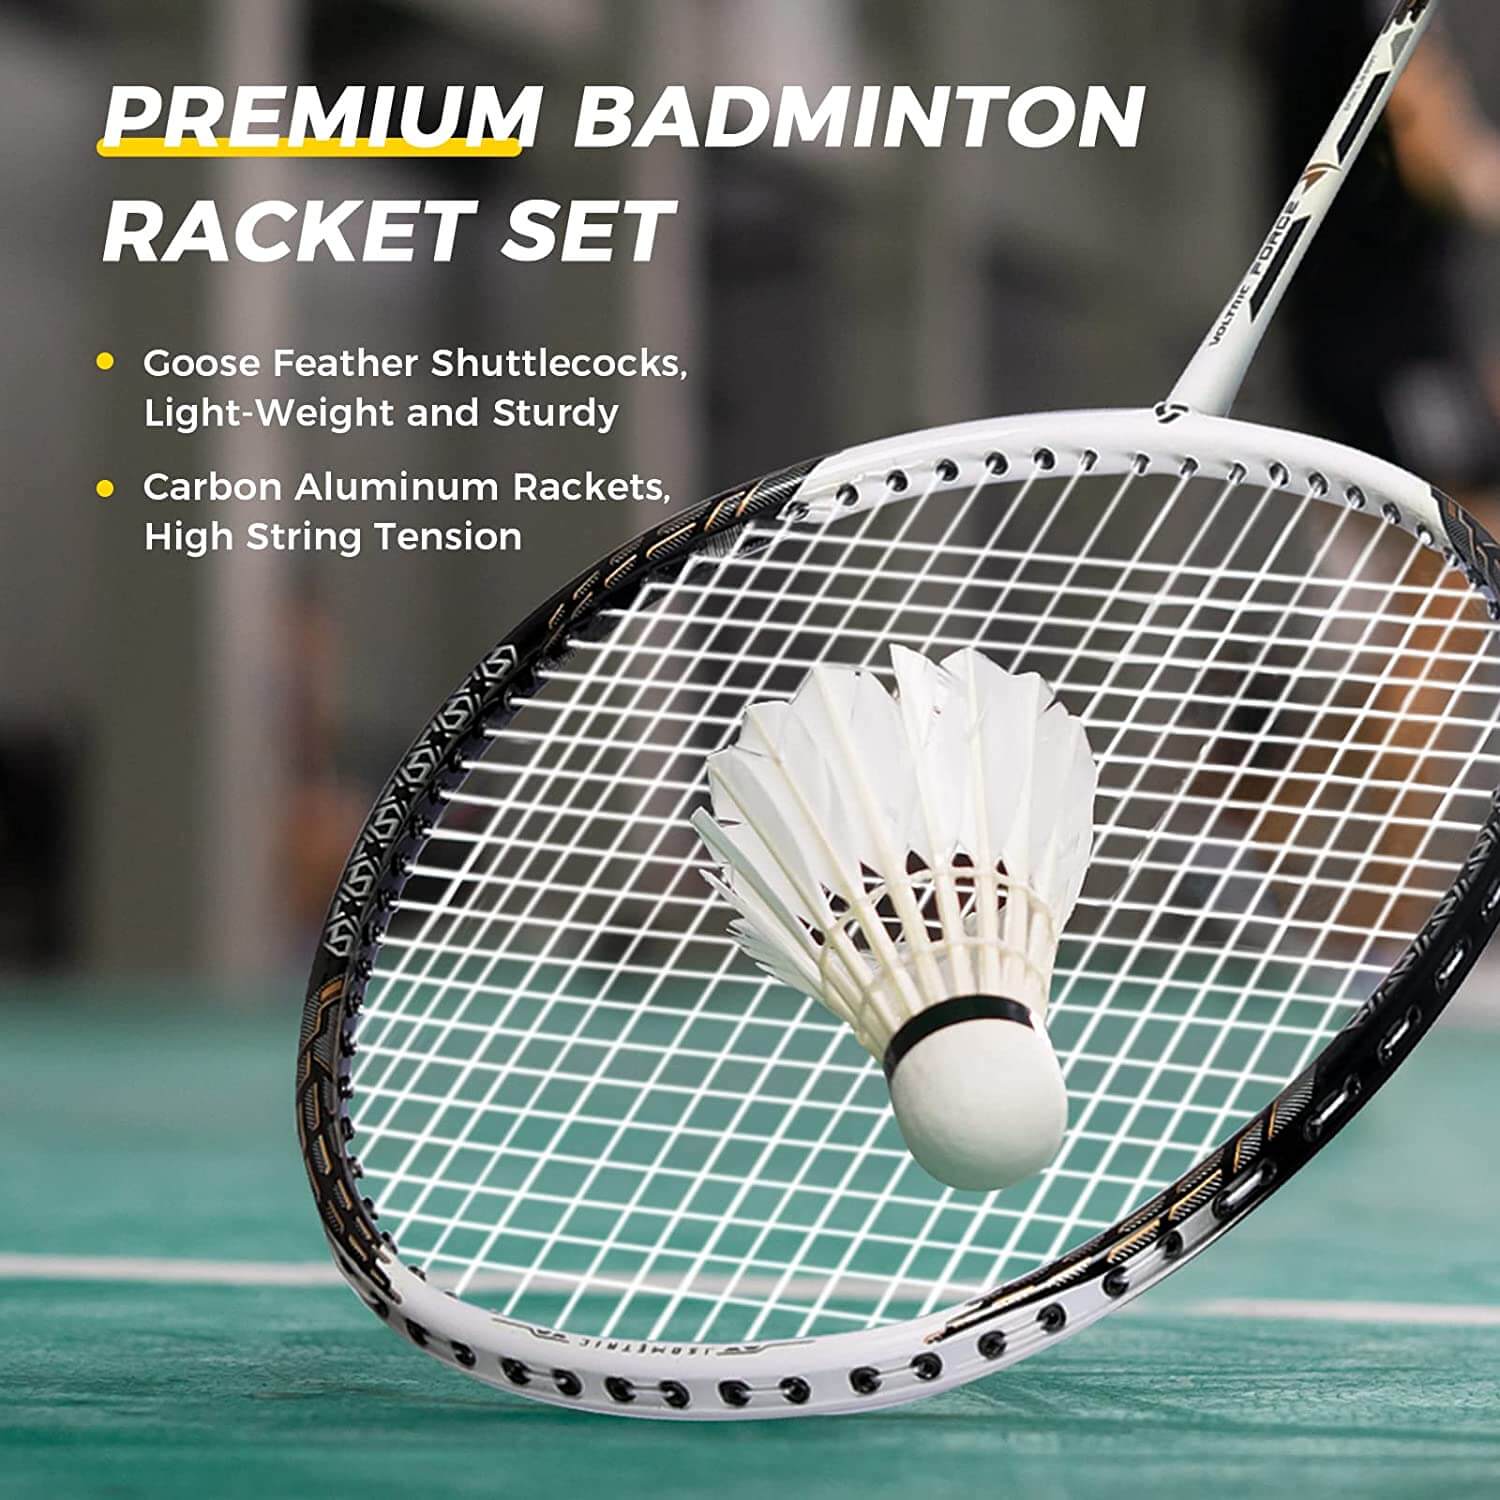 Professional Badminton Set for Backyard Beach Outdoor Portable Badminton Net